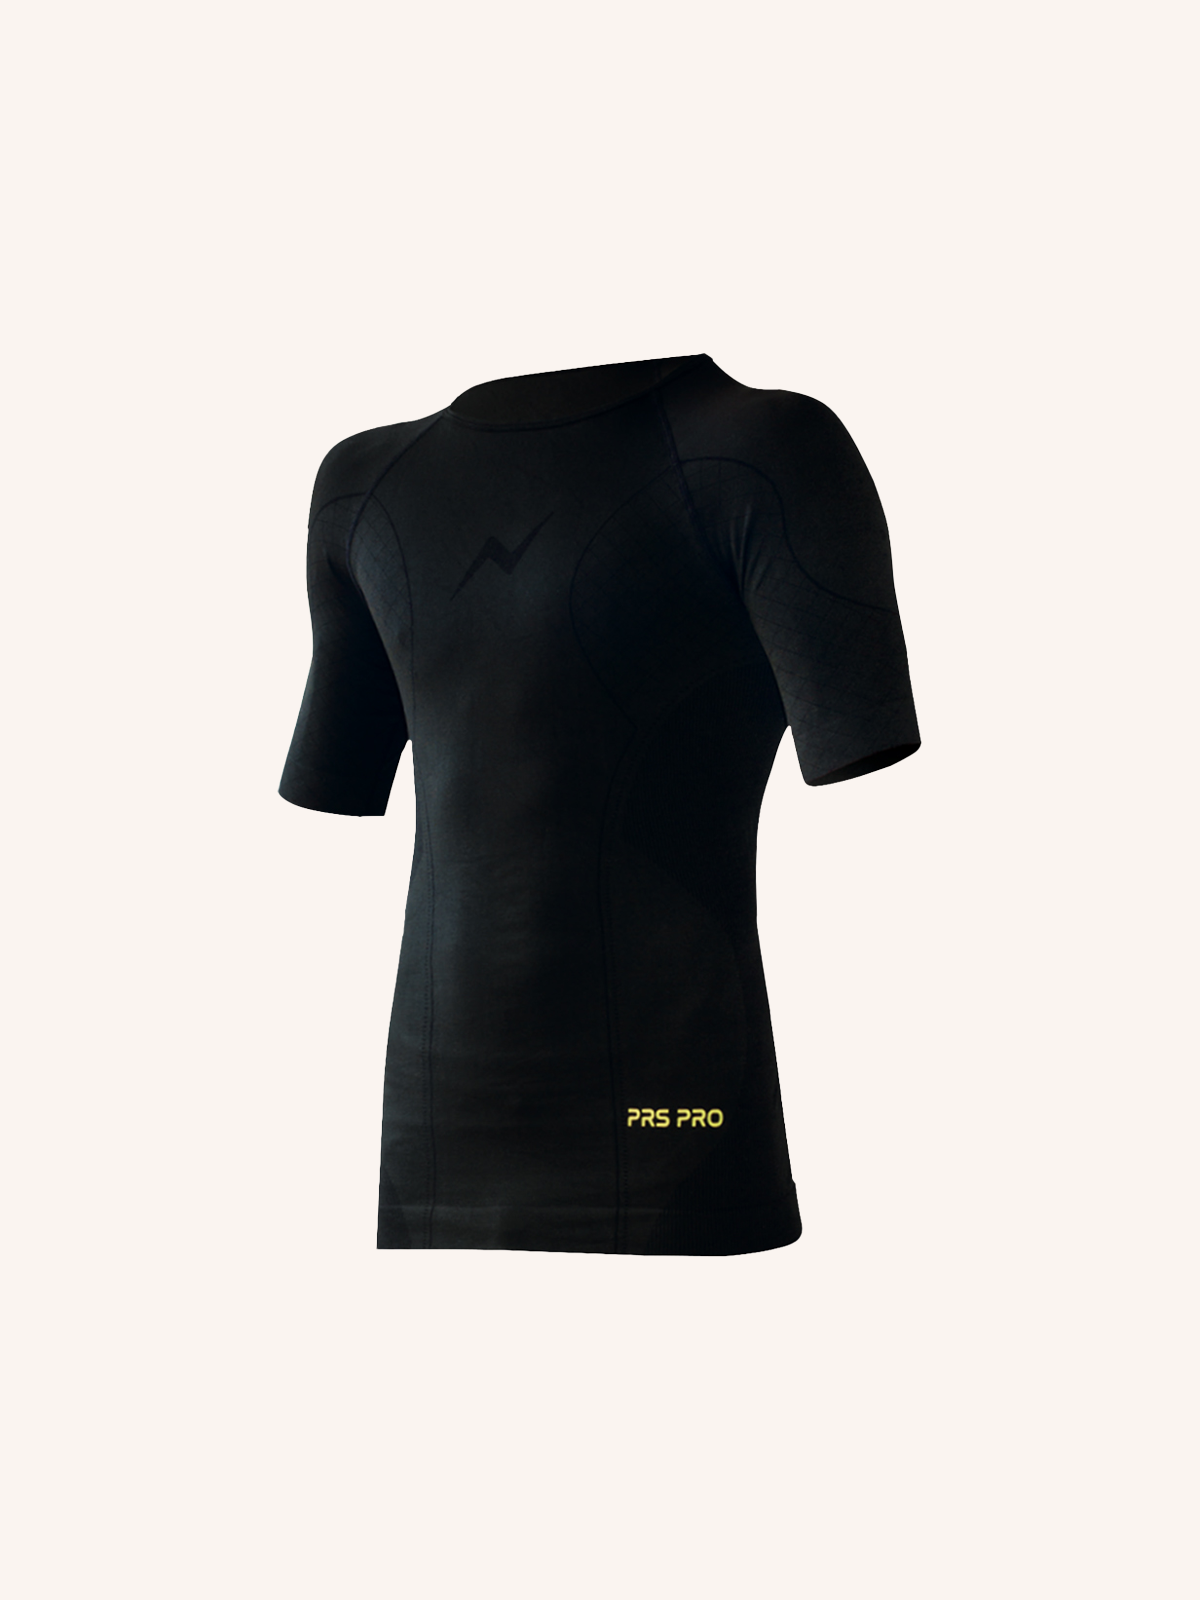 T-Shirt Tecnica per Uomo | Tinta Unita | Confezione Singola | PRS PRO 05